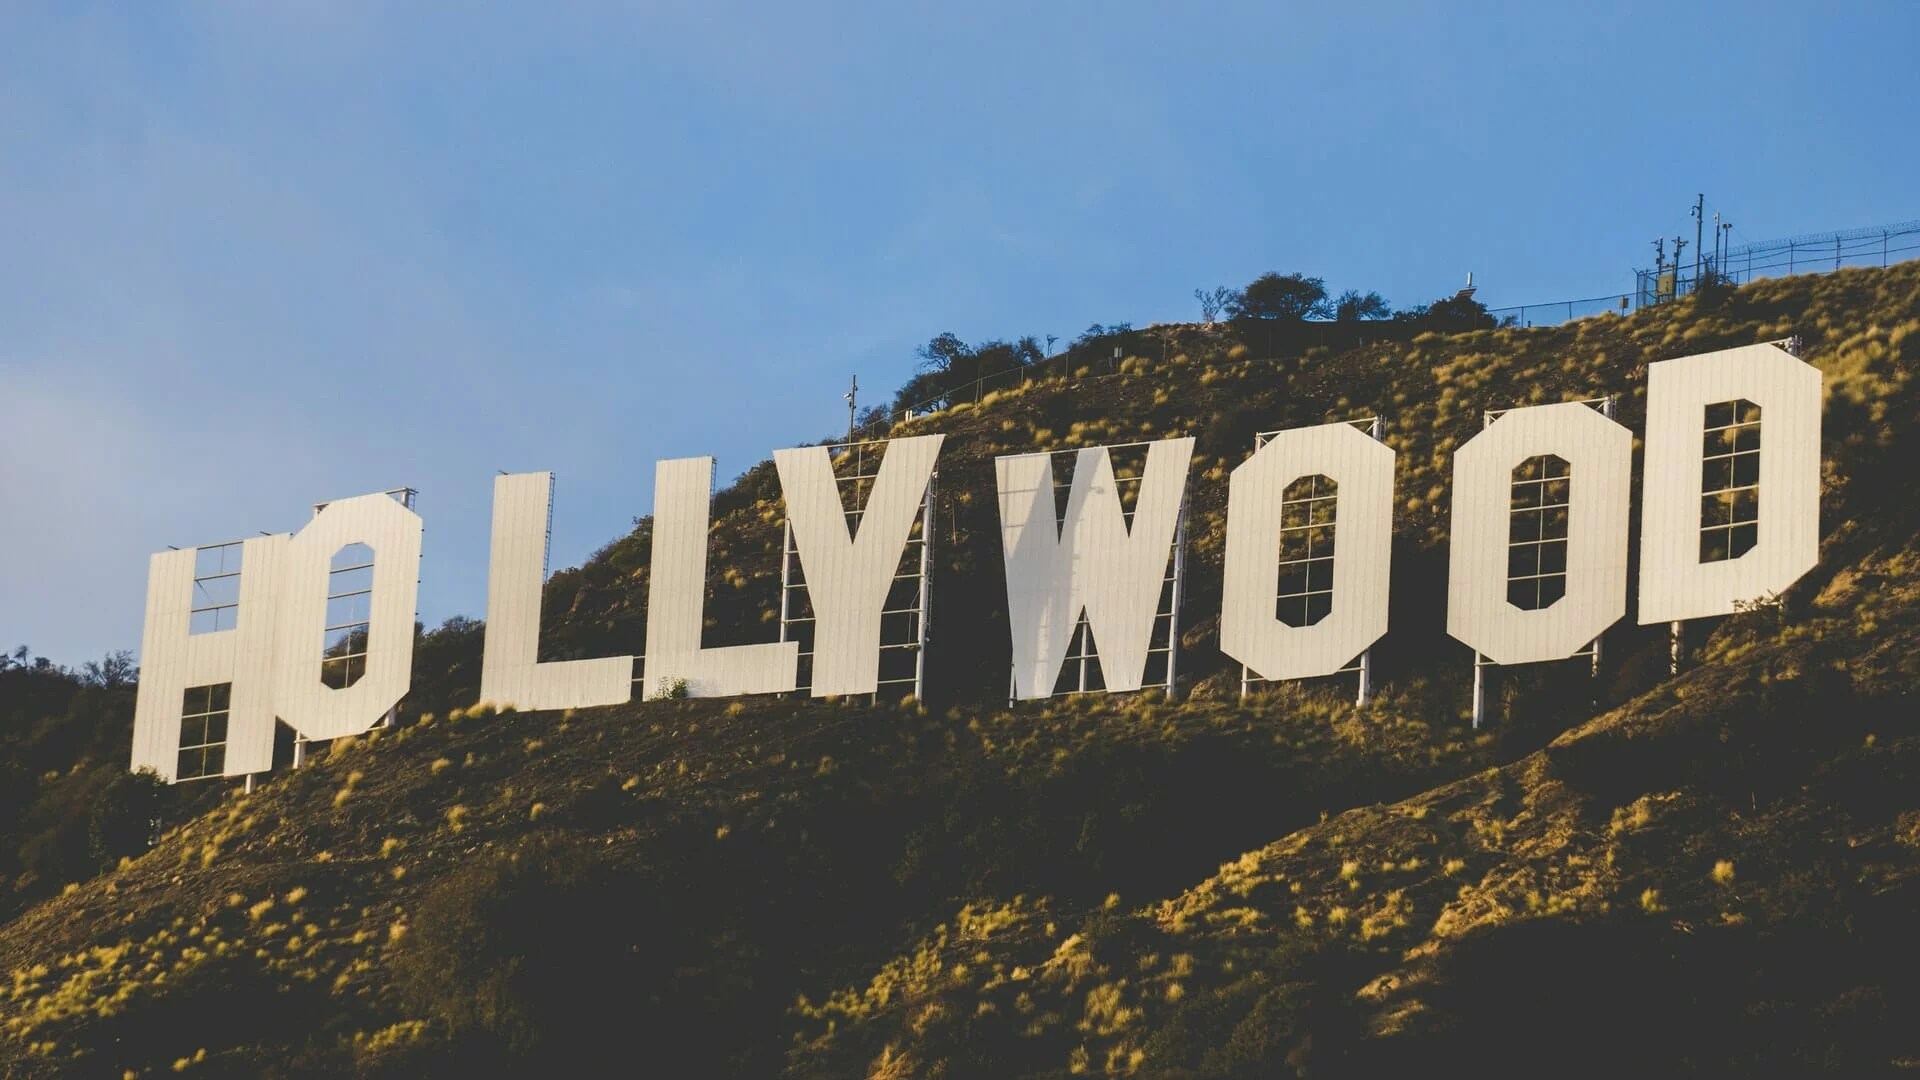 Comment se rendre au panneau Hollywood ?